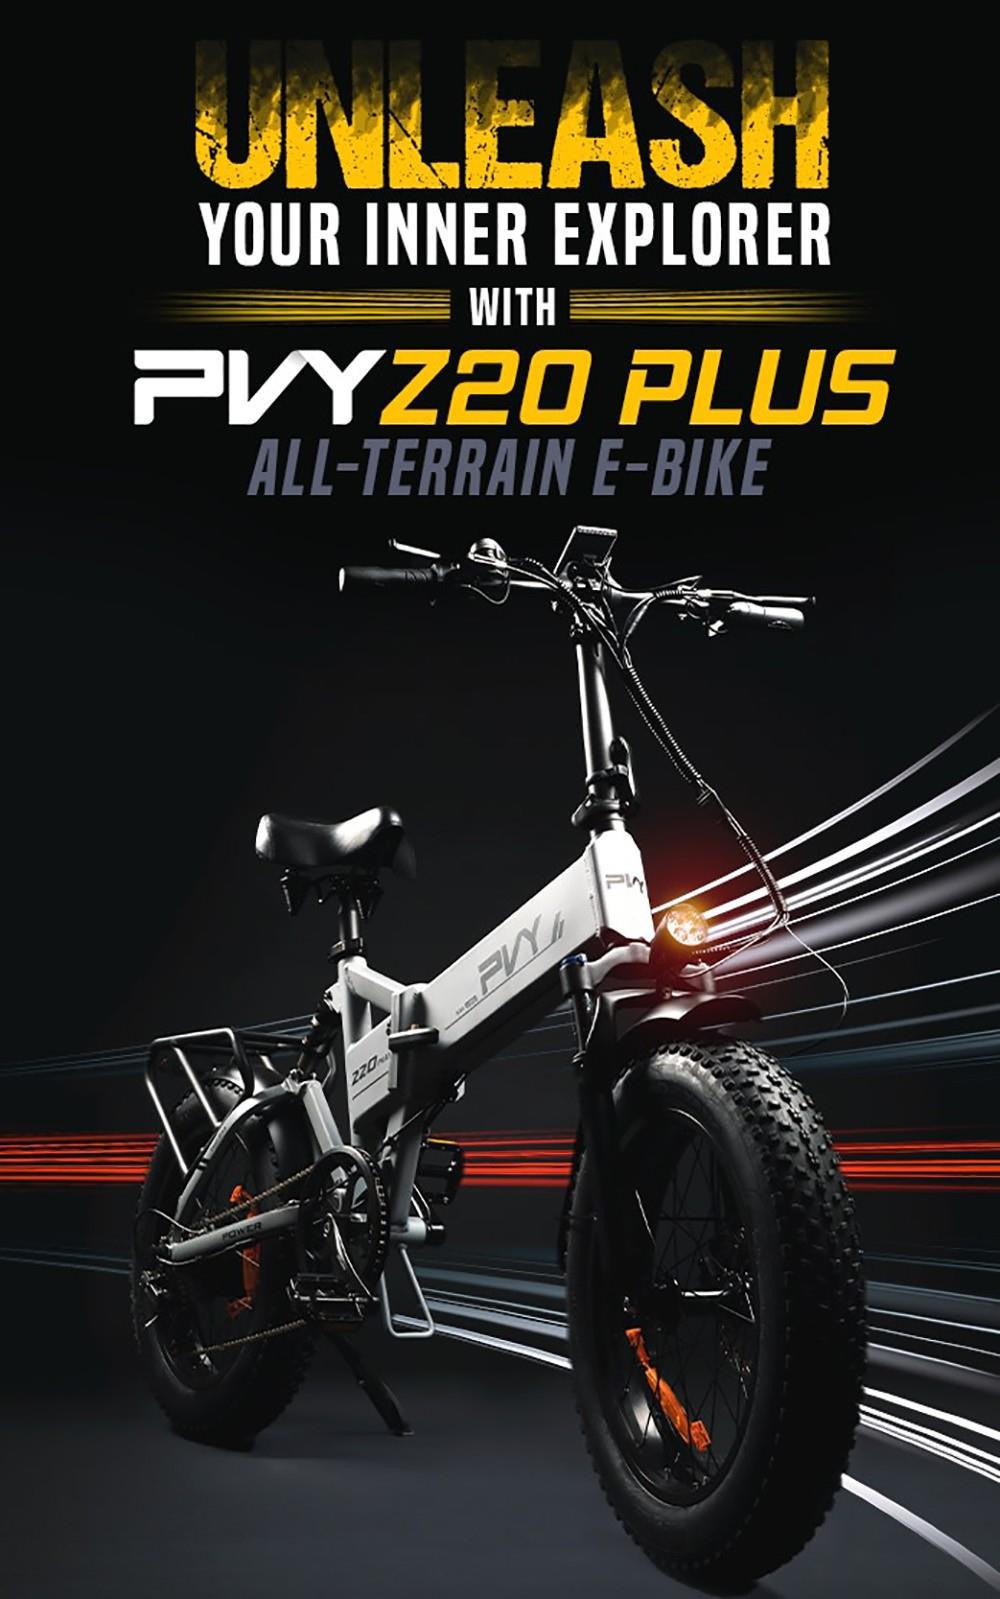 PVY Z20 Plus Faltbares Off-Road Elektrofahrrad, 250W Motor, 48V 14.5Ah Batterie, Dreifach-Federungssystem - Khaki